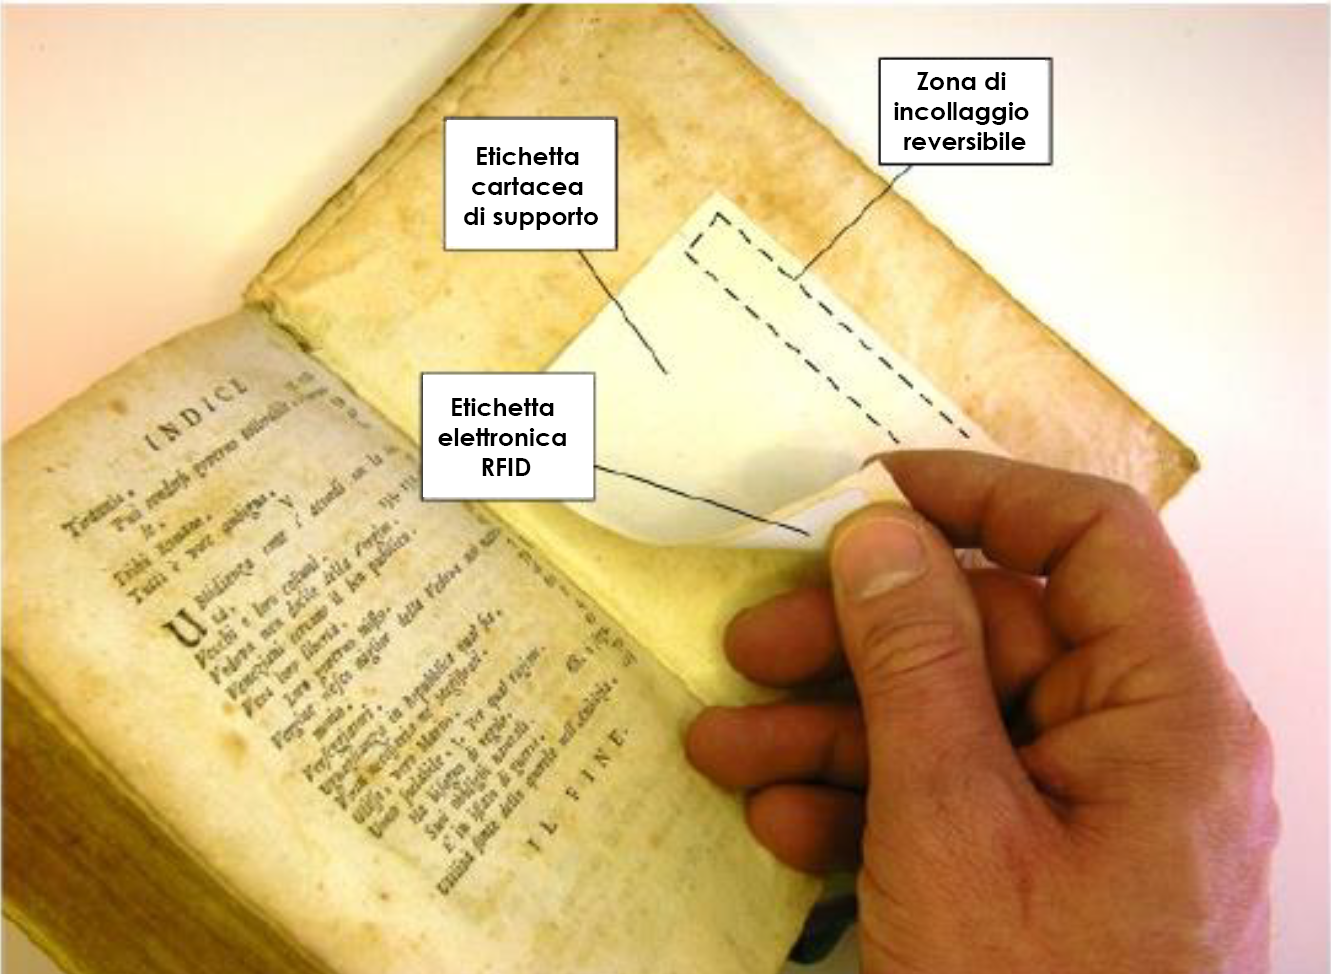 Le nostre etichette Rfid per libri antichi, adesive ma reversibili